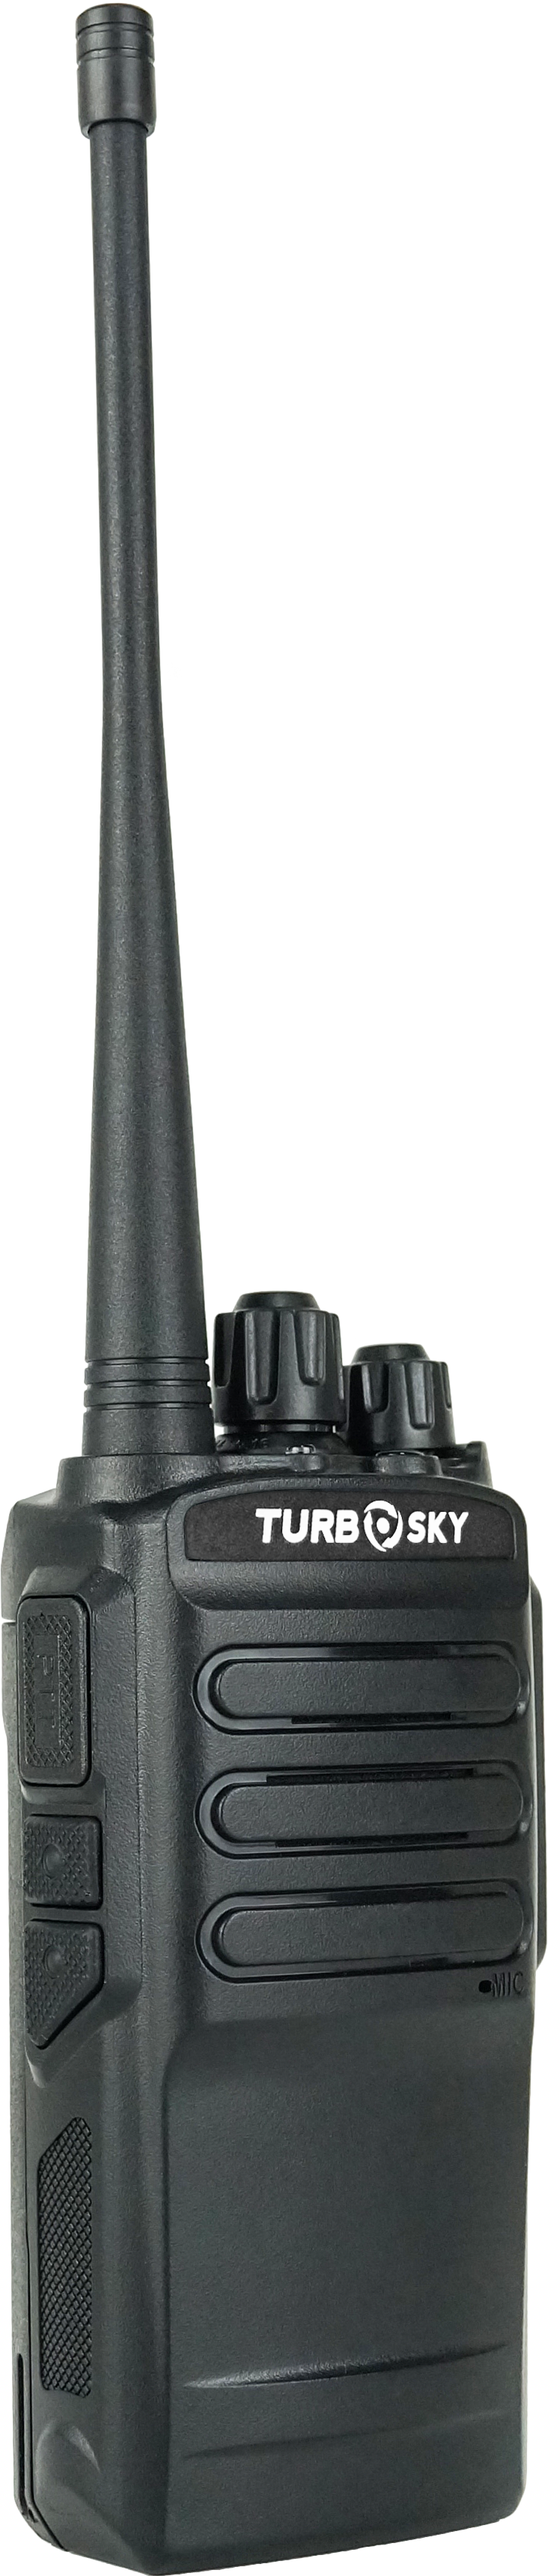 Портативная радиостанция TurboSky T3